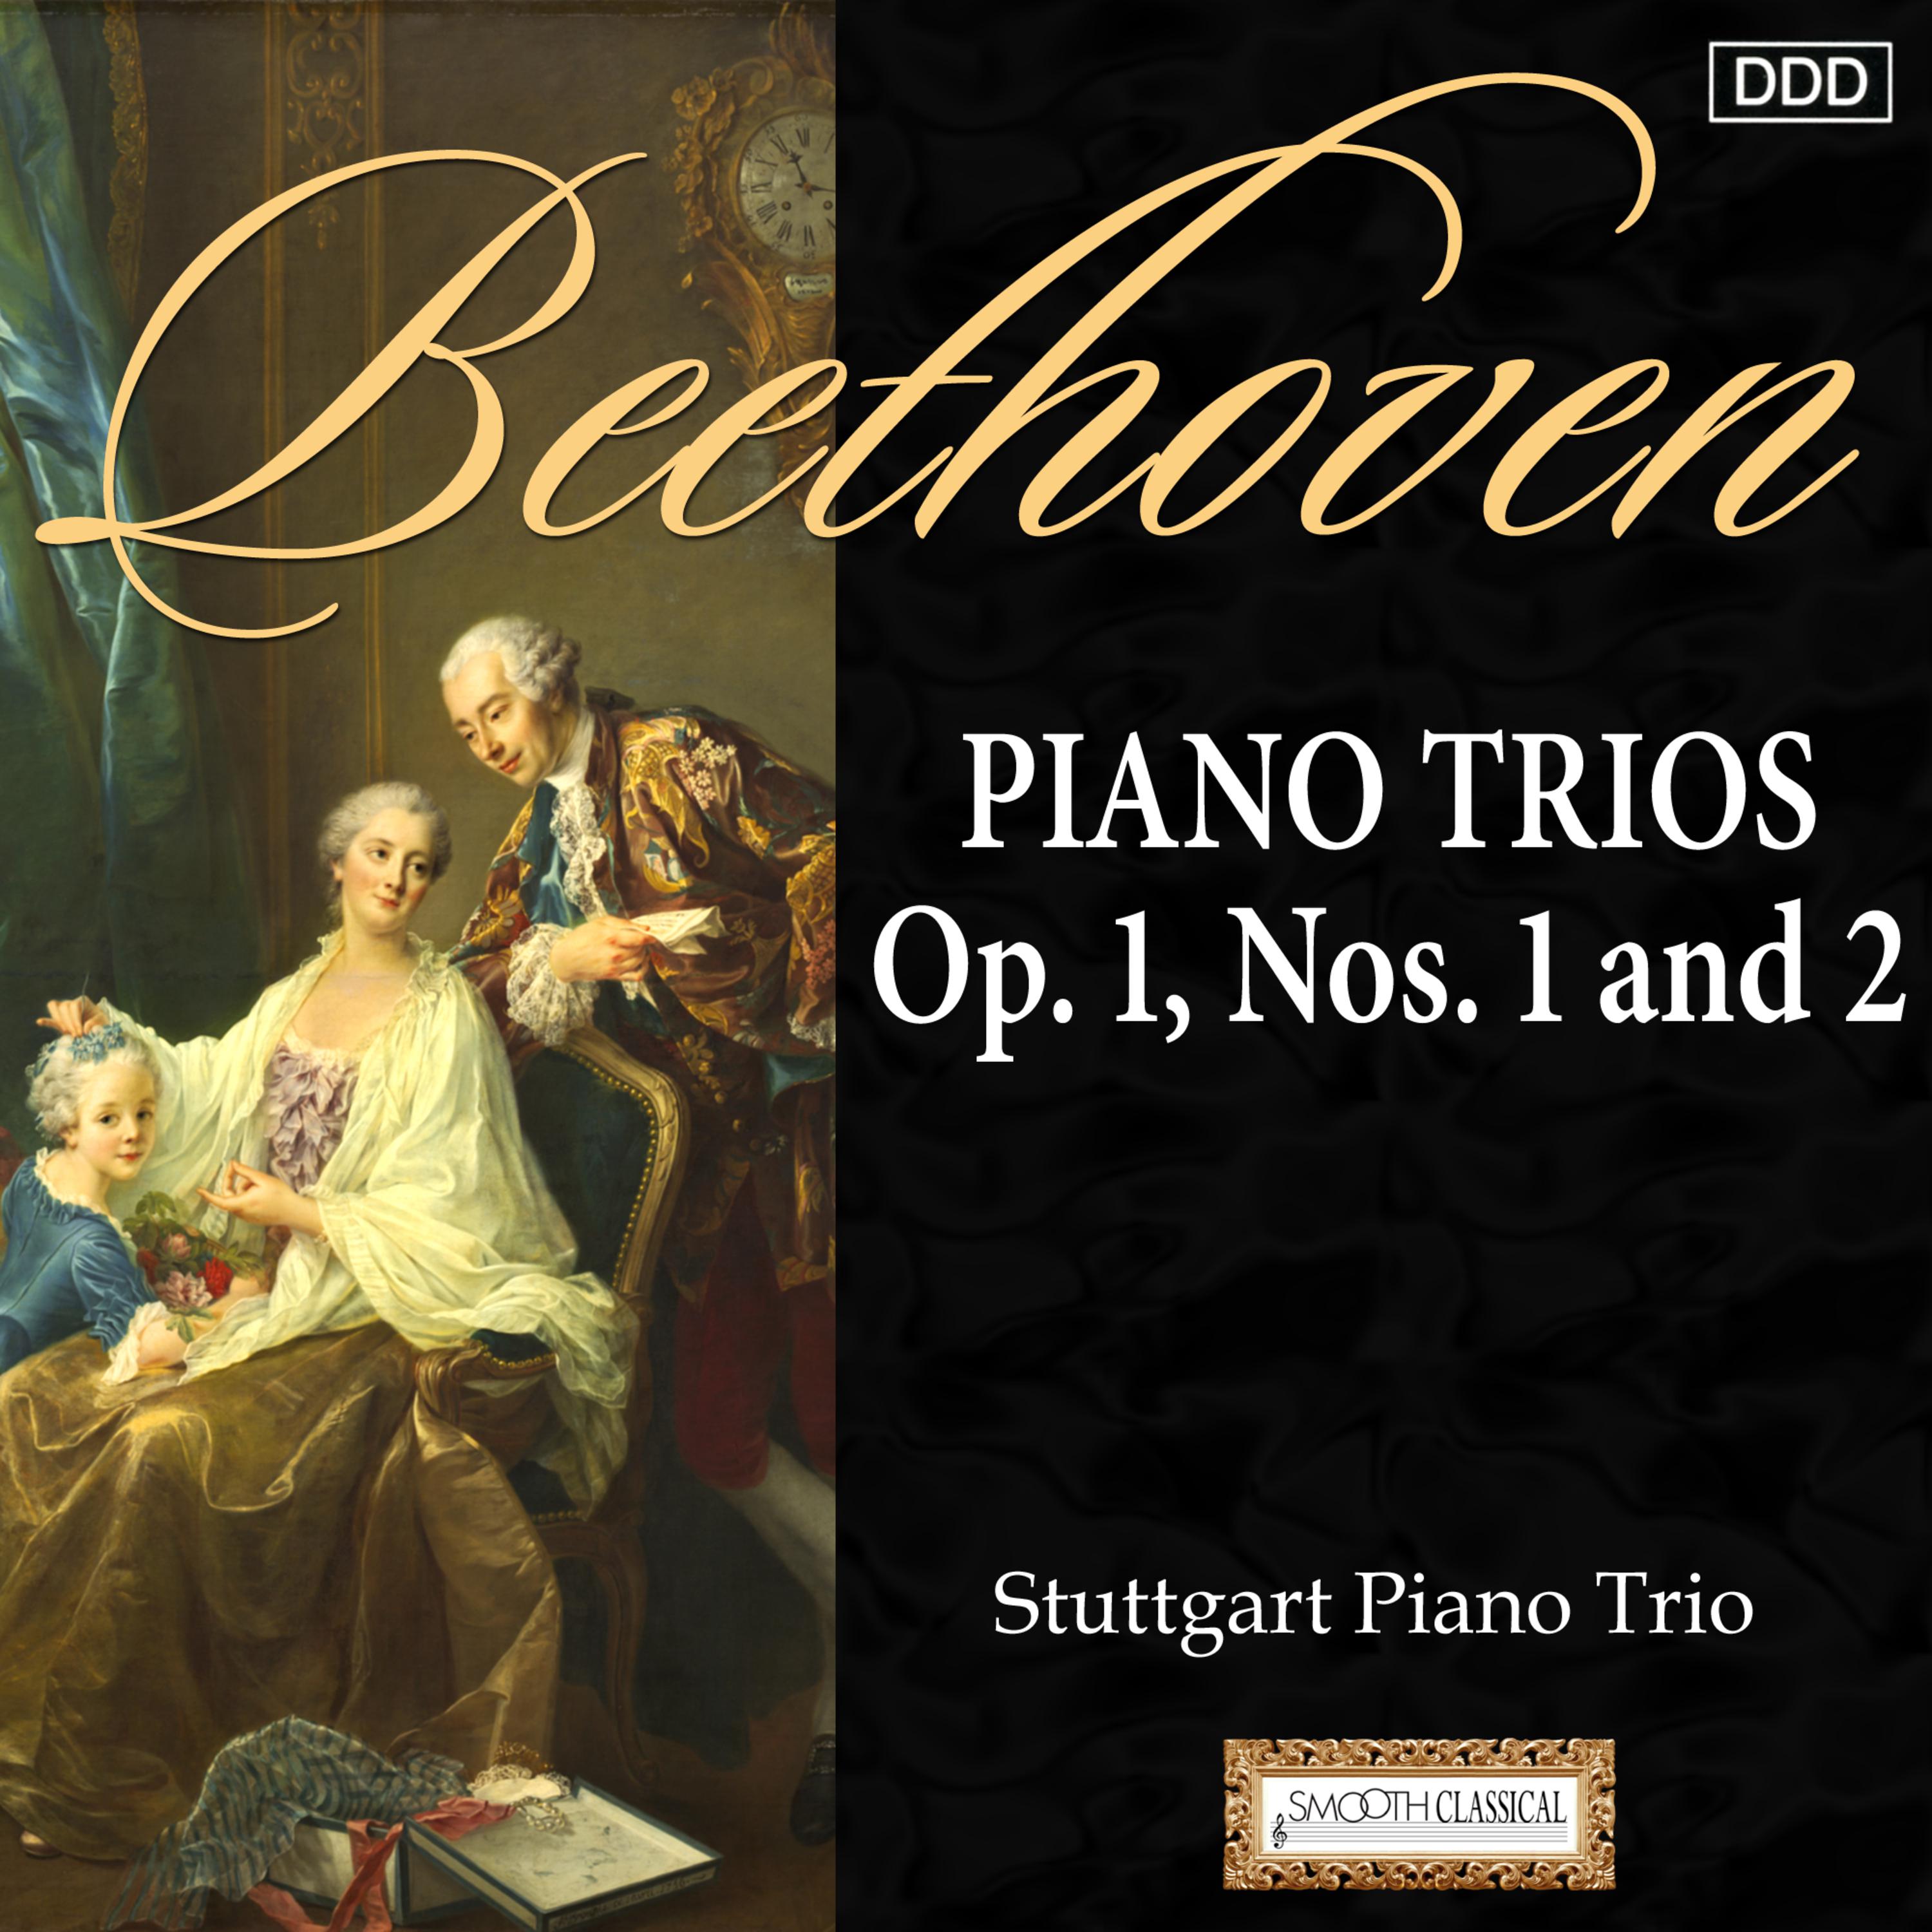 Piano Trio No. 2 in G Major, Op. 1 No. 2: II. Largo con espressione